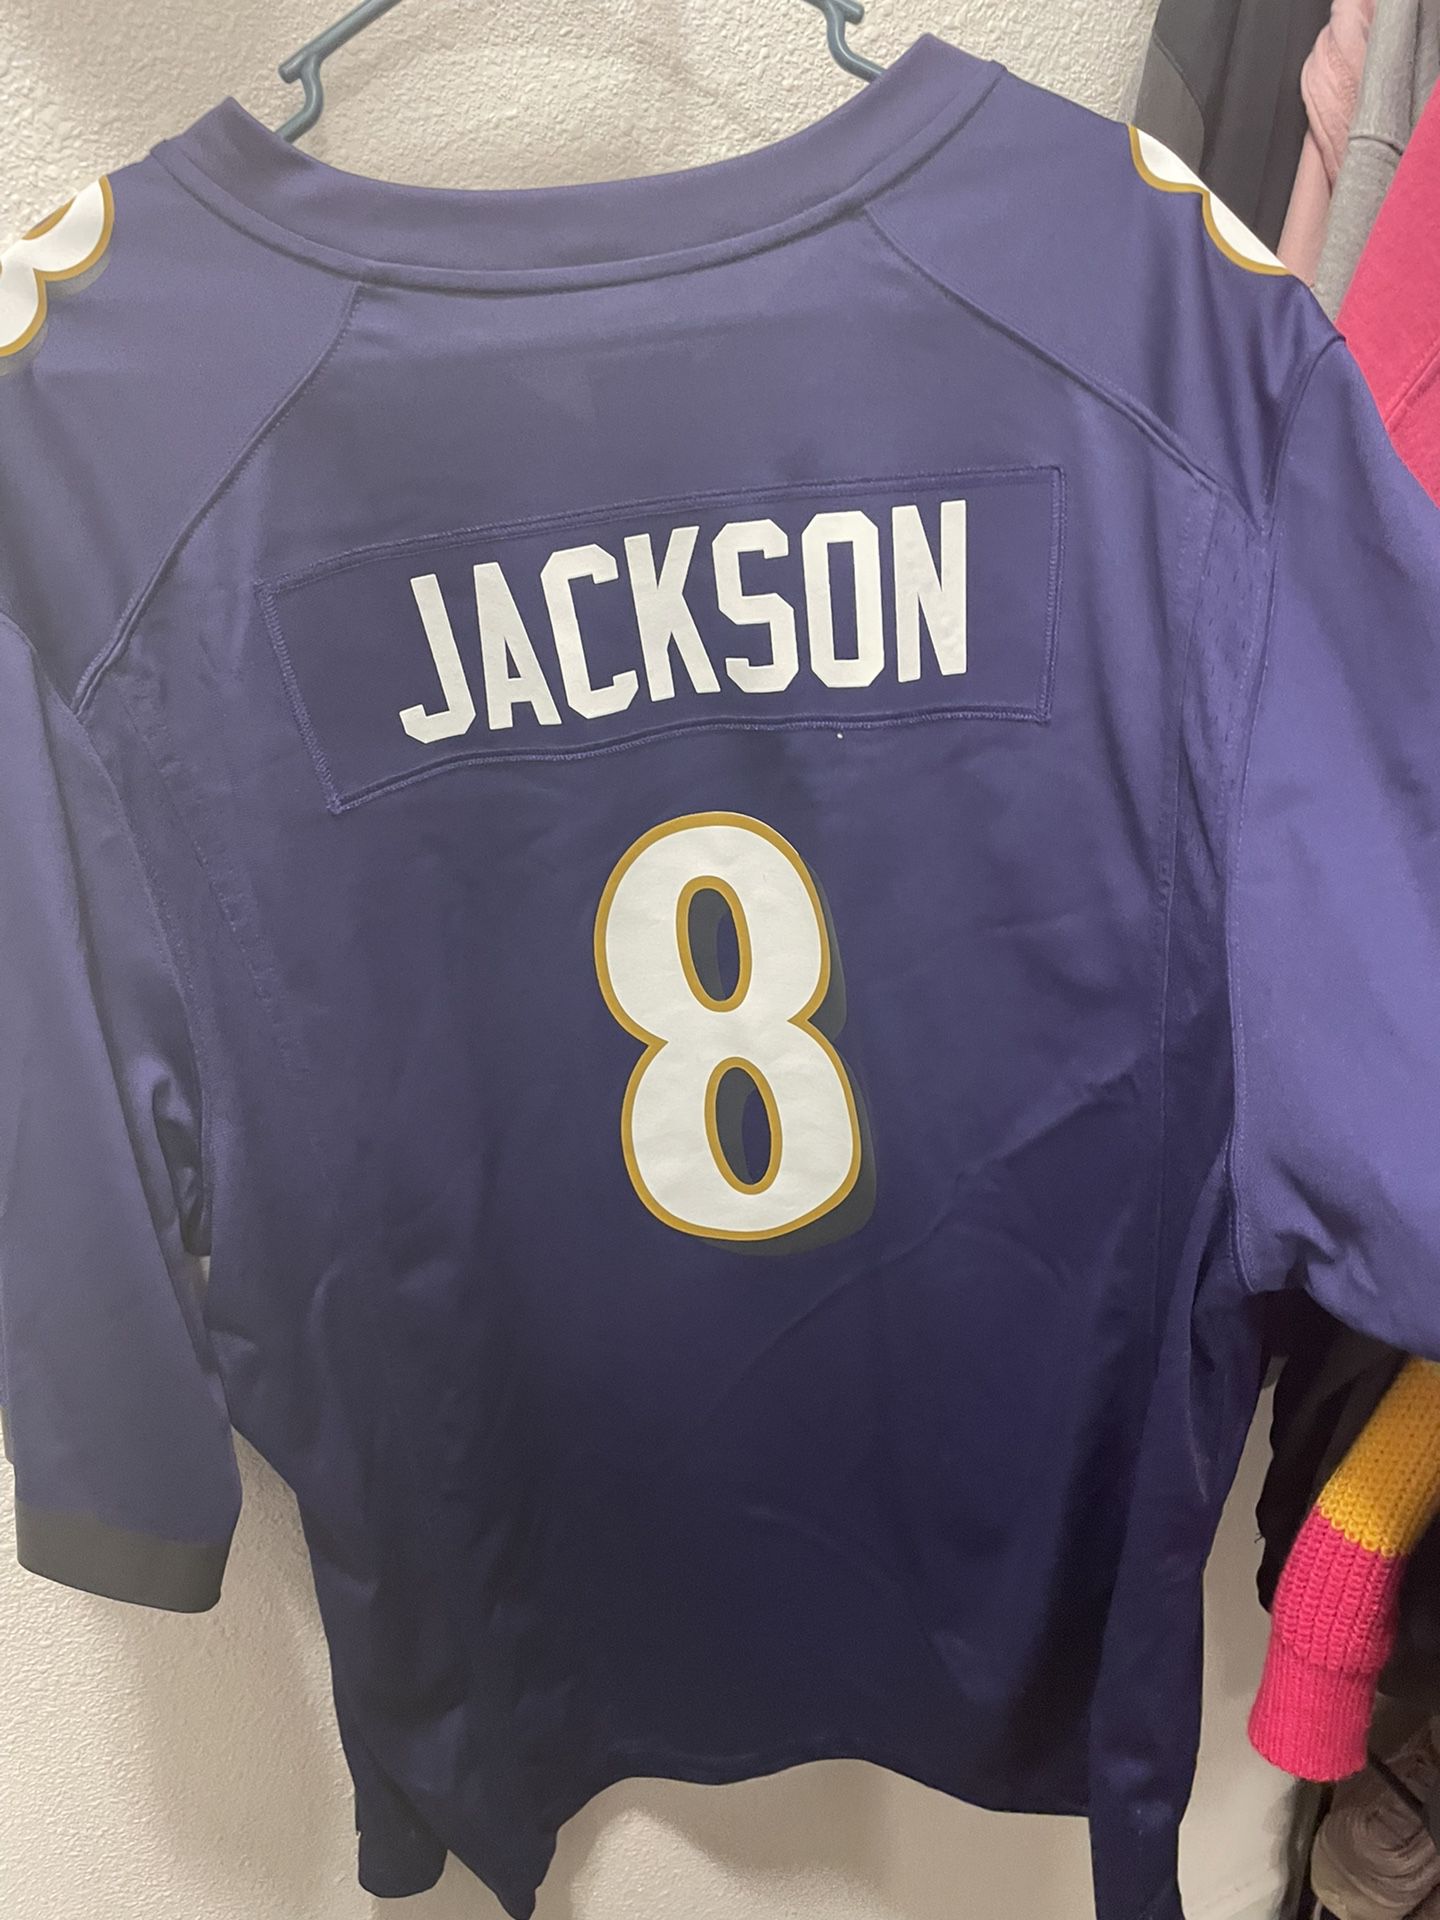 Lamar Jackson Jersey for Sale in Louisville, KY - OfferUp